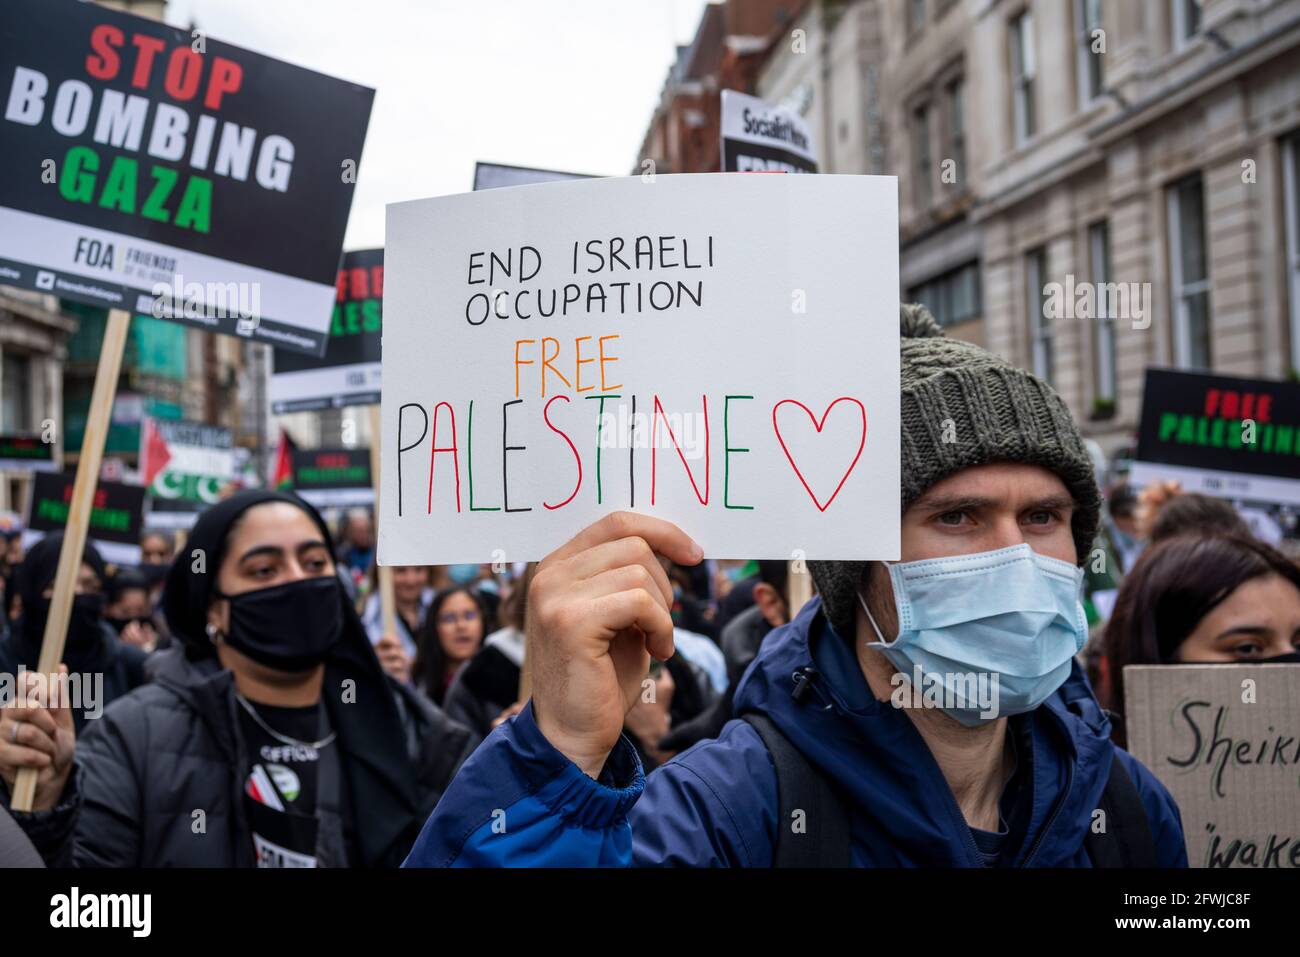 Protestierende bei der Nationalen Demonstration für Palästina, Freie Palästina, in London, Großbritannien. Männlich trägt Gesichtsmaske. Plakat. Beendet die israelische Besatzung. Stockfoto